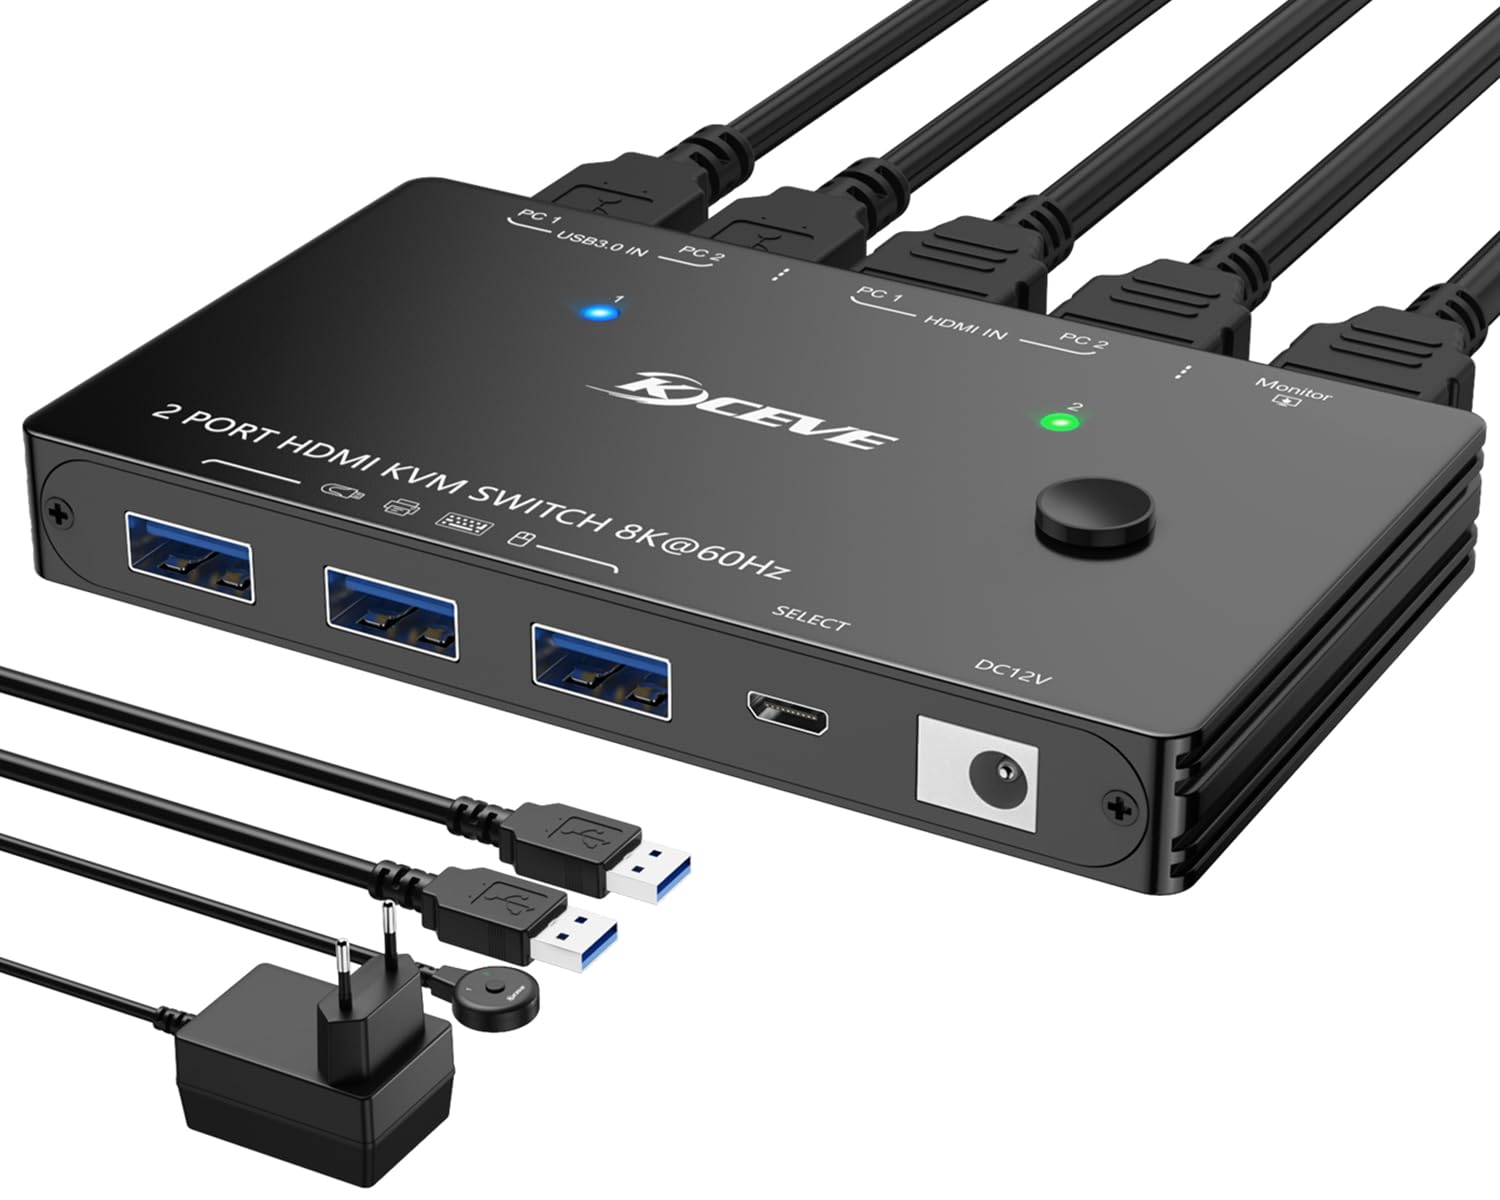 USB3.0 HDMI KVM Switch 2 PC 1 Monitor 8K@60Hz 4K@120Hz, KVM Switch mit HDMI2.1 und 4 USB 3.0 Ports für 2 PC Sharing 1 Monitor und Tastatur, Maus, mit Netzteil, Kabelfernbedienung und 2 USB3.0-Kabeln